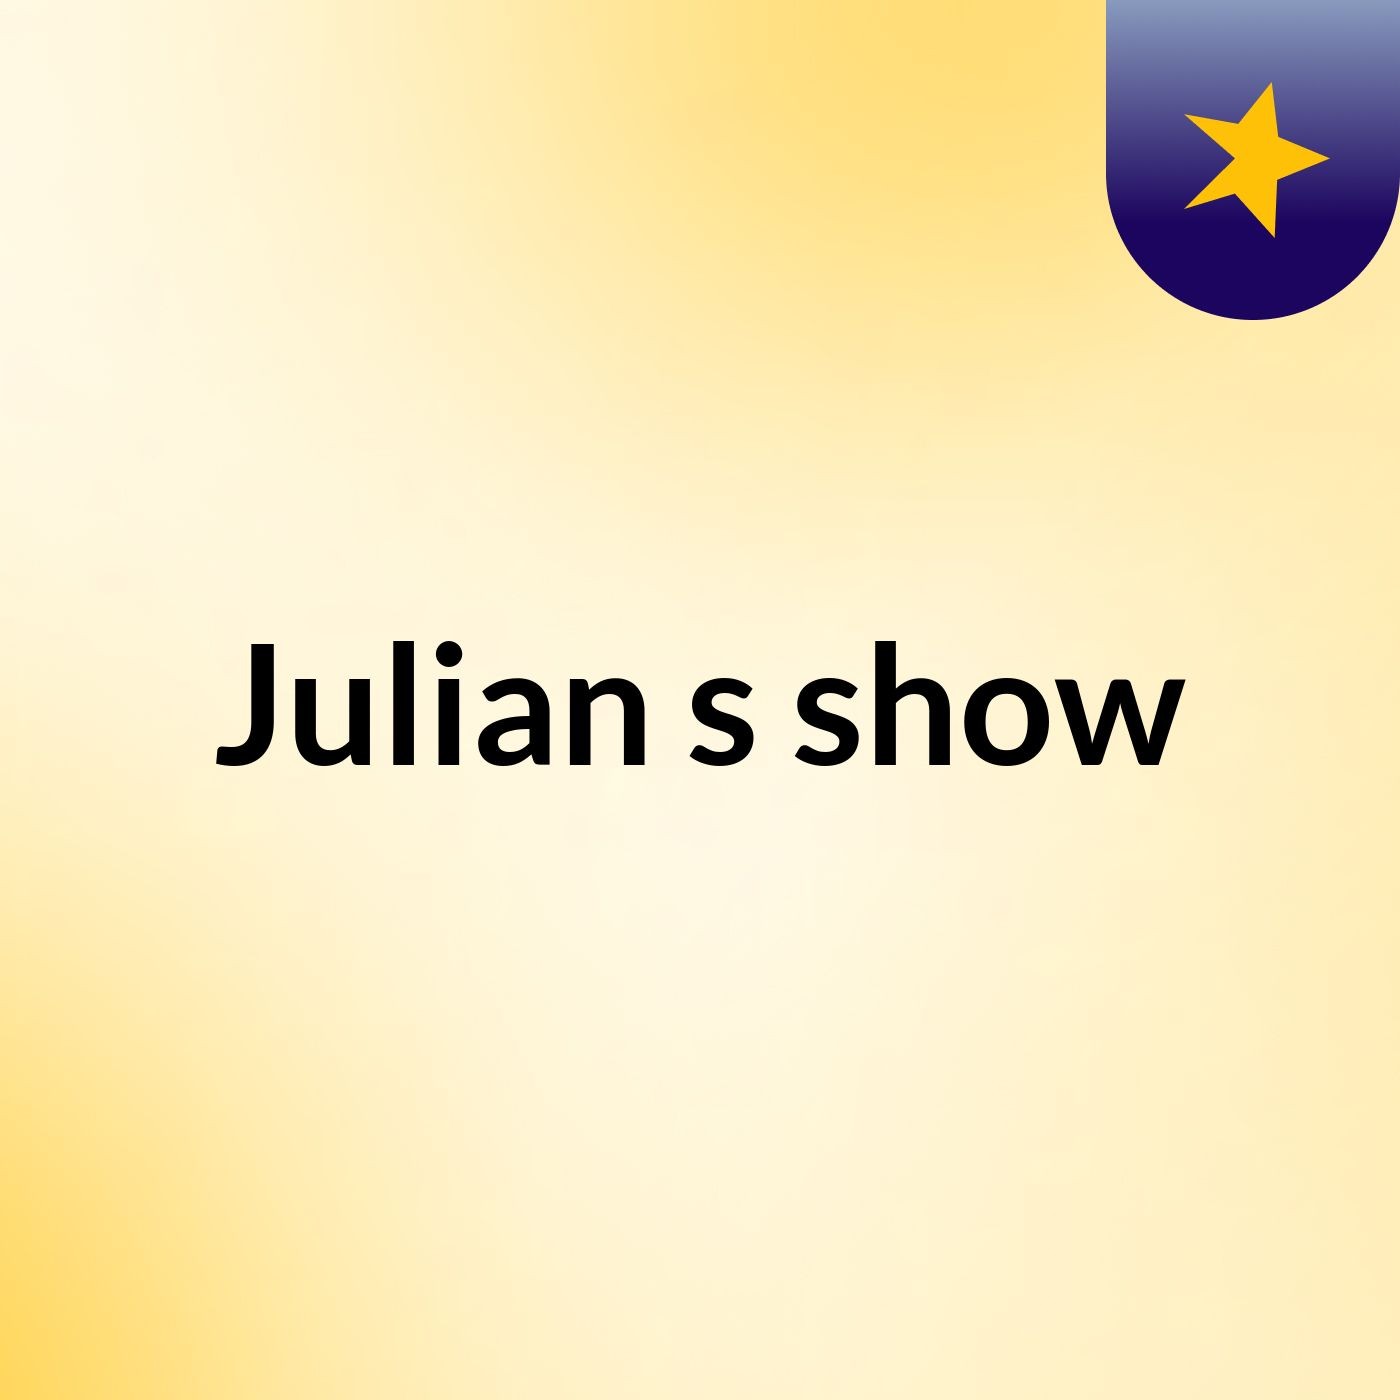 Julian's show